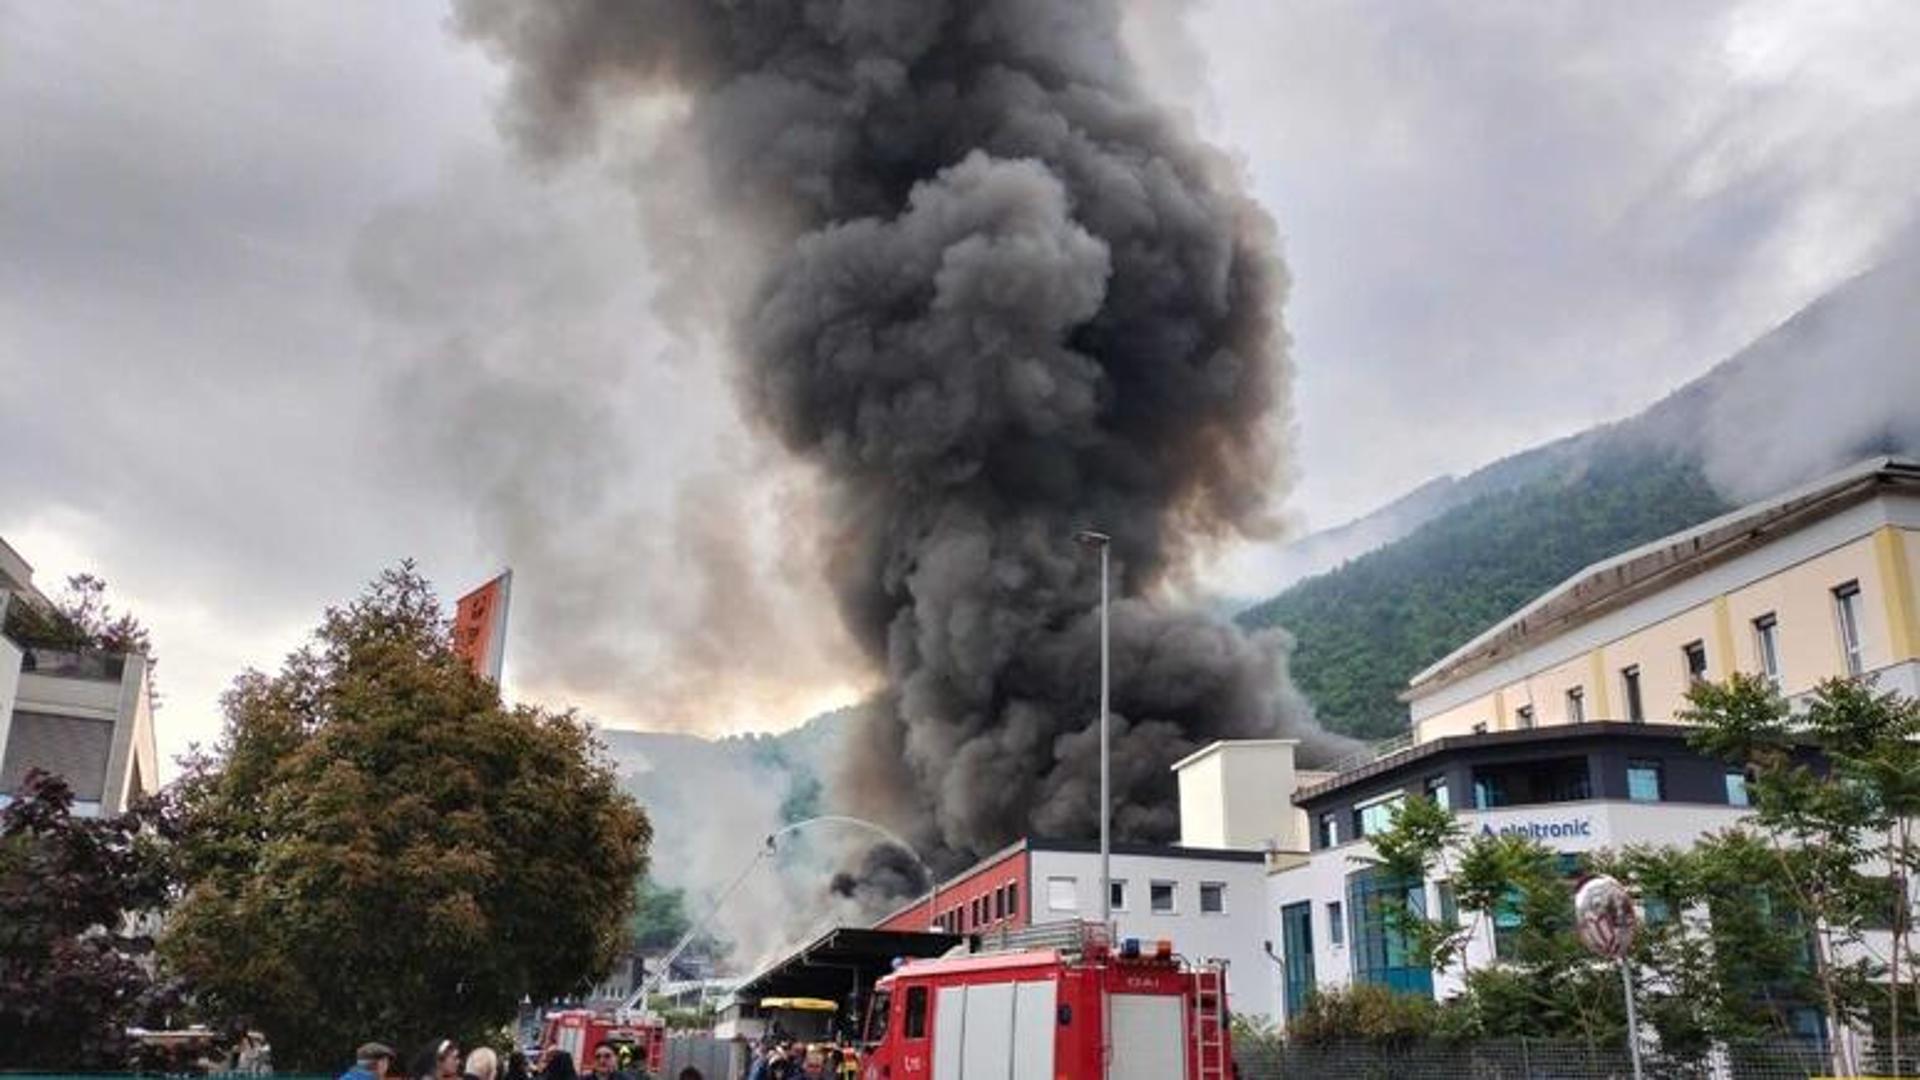 Incendio all'Alpitronic, azienda di colonnine di ricariche elettriche: evacuata una scuola e chiuso lo spazio aereo